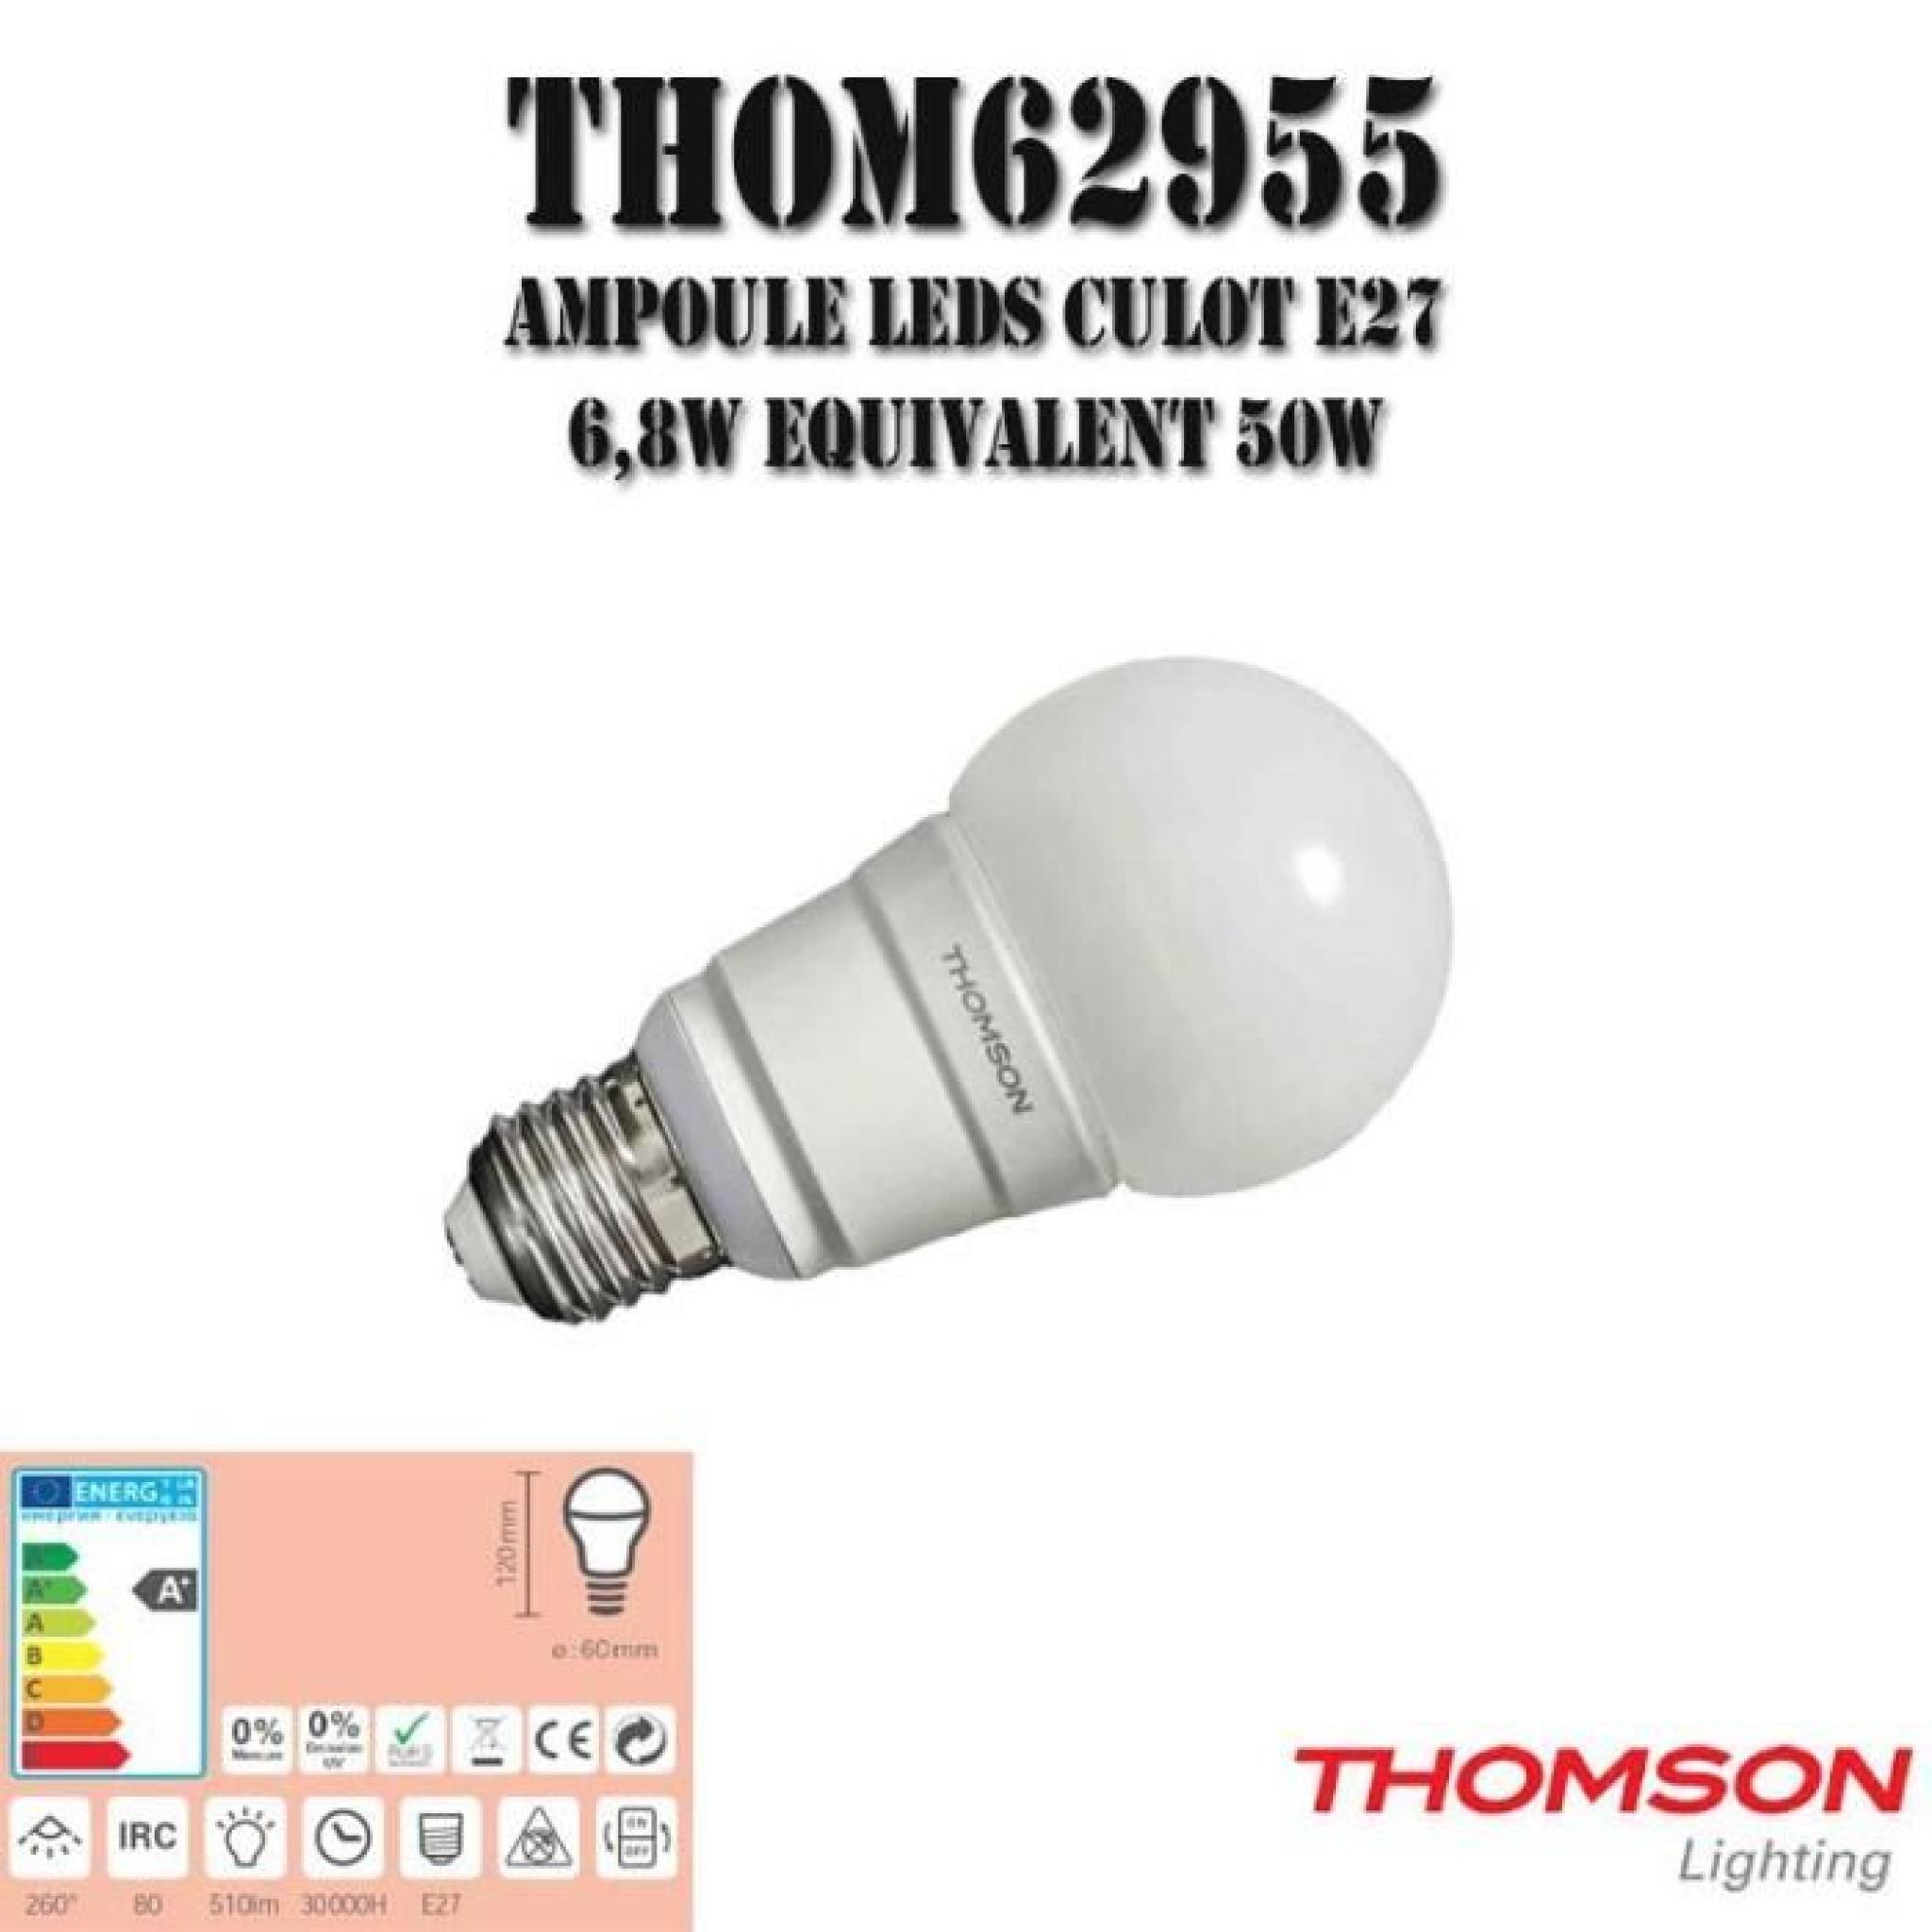 THOM62955: Ampoule LED E27, 6,8W